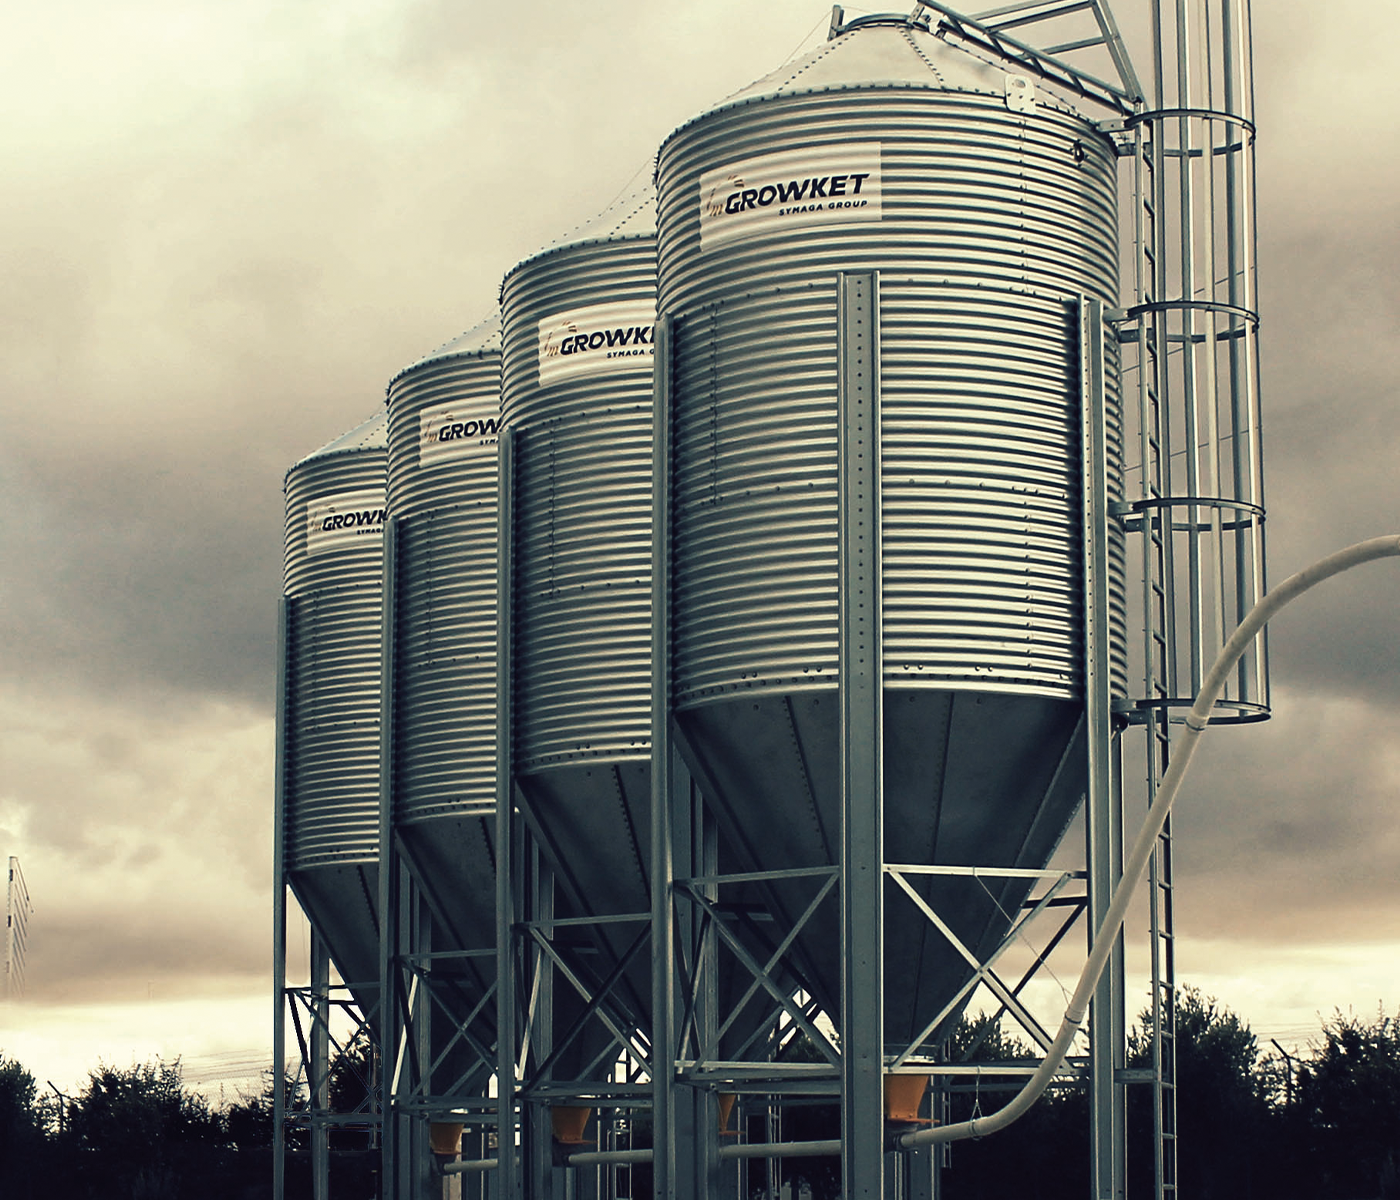 Nueva visión Growket: Ser referente en silos granja y sistema...